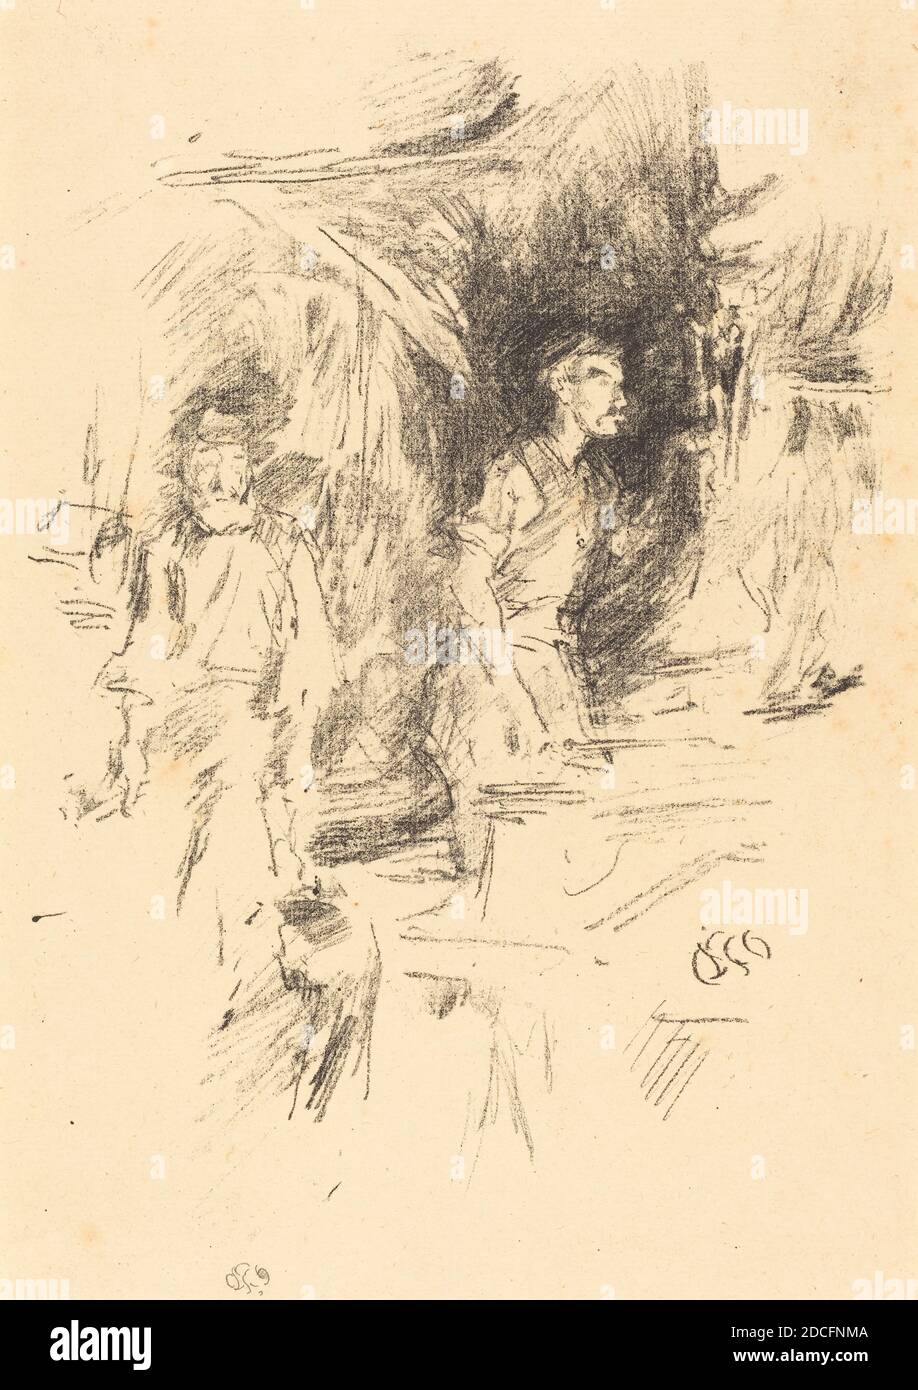 James McNeill Whistler, (Künstler), Amerikaner, 1834 - 1903, The Old Smith's Story, 1895, Lithographie in schwarz auf gedeckten Papier, Bild: 20.5 × 15.3 cm (8 1/16 × 6 in.), Blatt: 27.8 × 18.3 cm (10 15/16 × 7 3/16 in Stockfoto